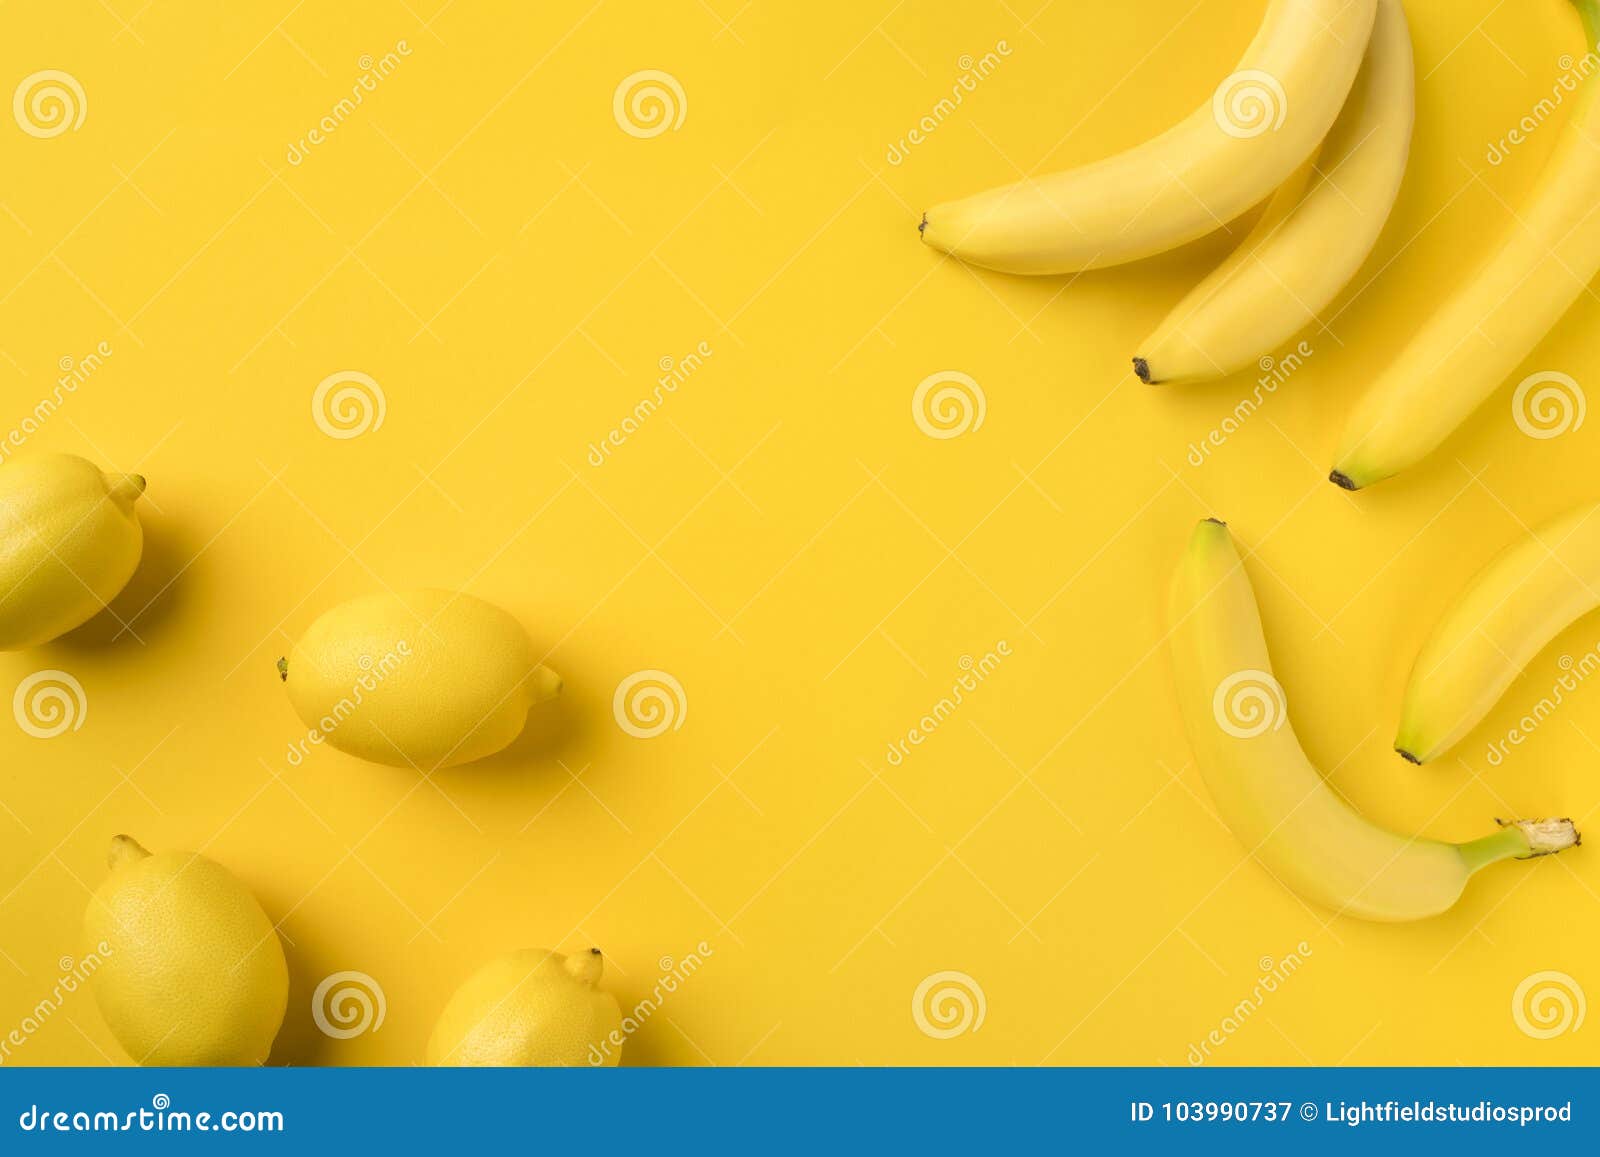 香蕉和柠檬飞果 库存图片. 图片 包括有 飞行, 热带, 混合, 差异, 新鲜, 食物, 创造性, 果子 - 185183821